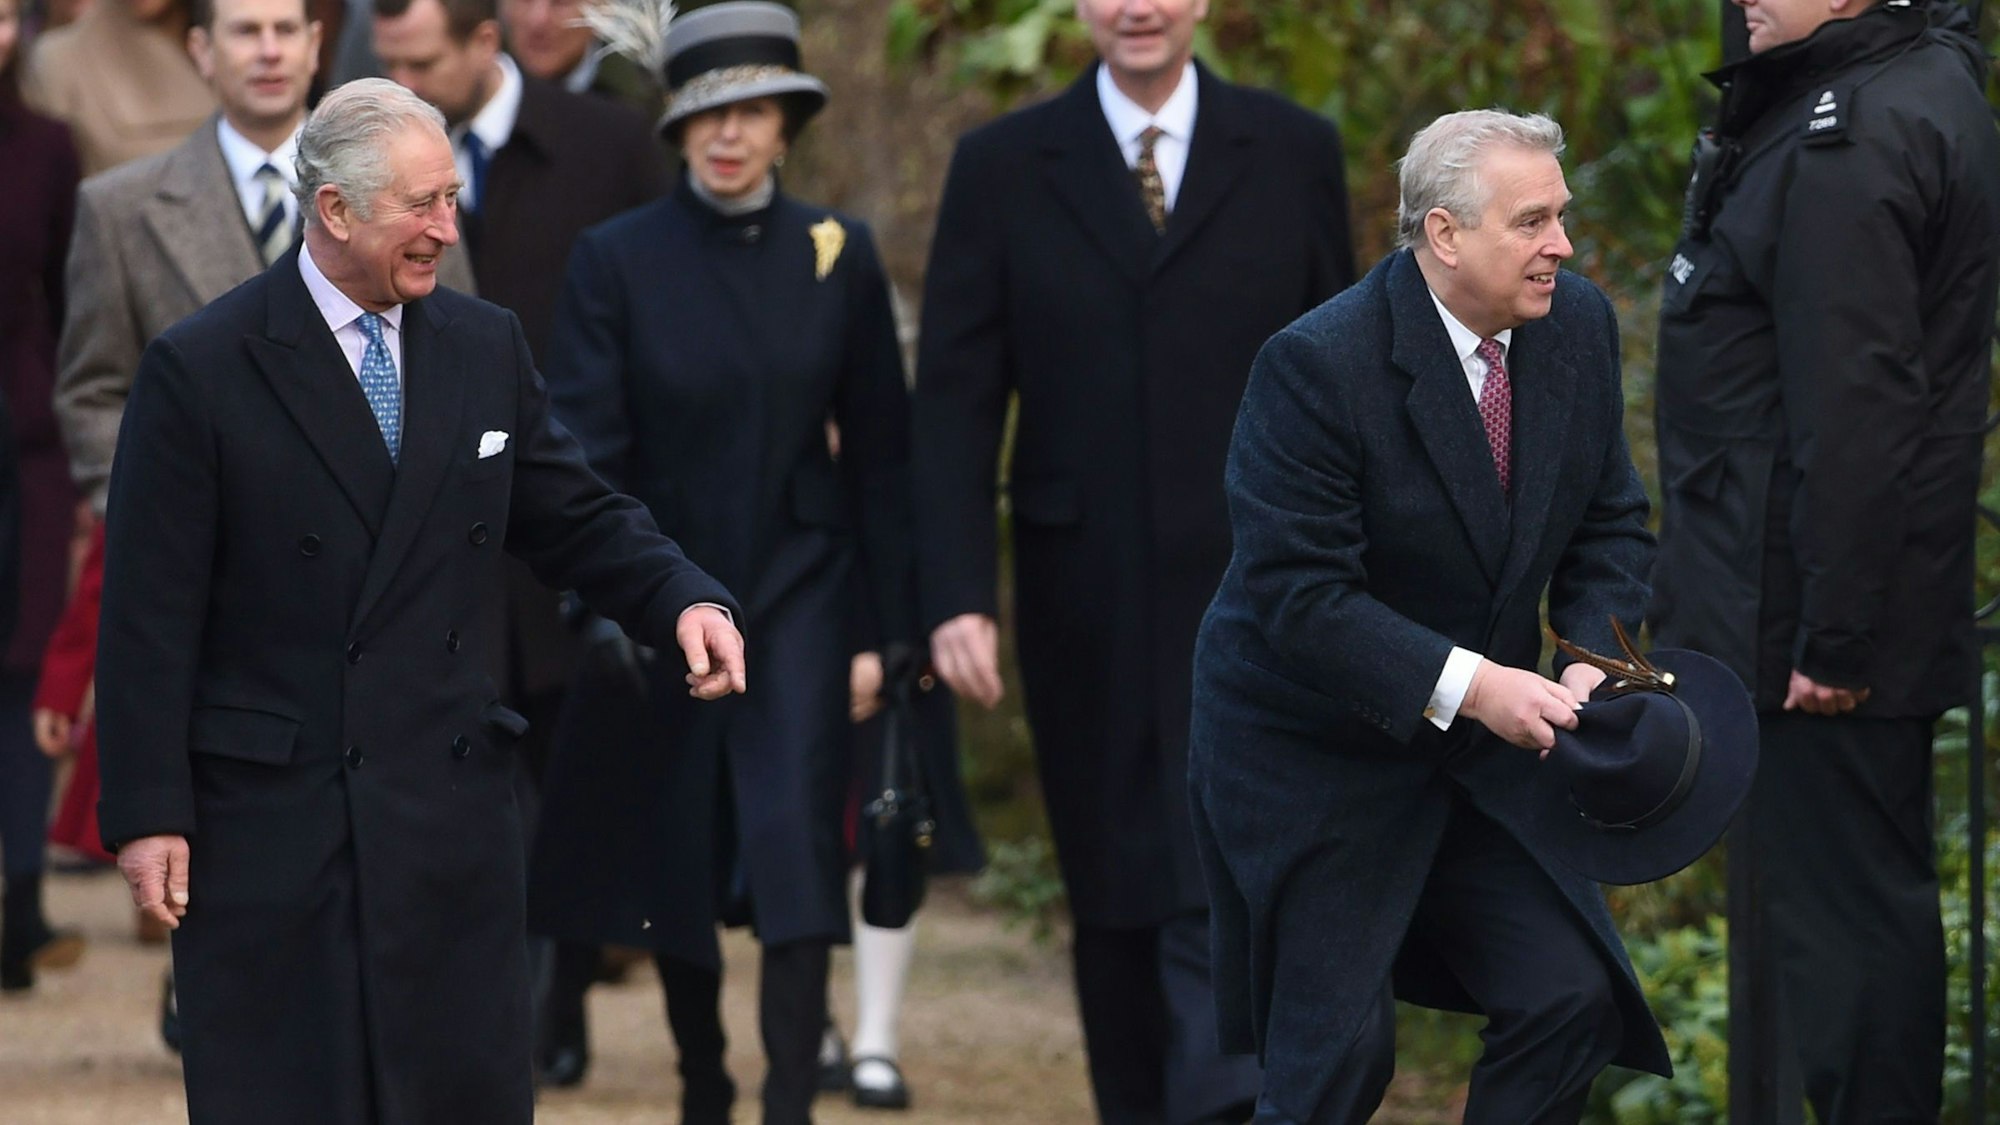 Prinz Charles (l) amüsiert sich über die "Hutfangaktion" seines Bruders Prinz Andrew (r).